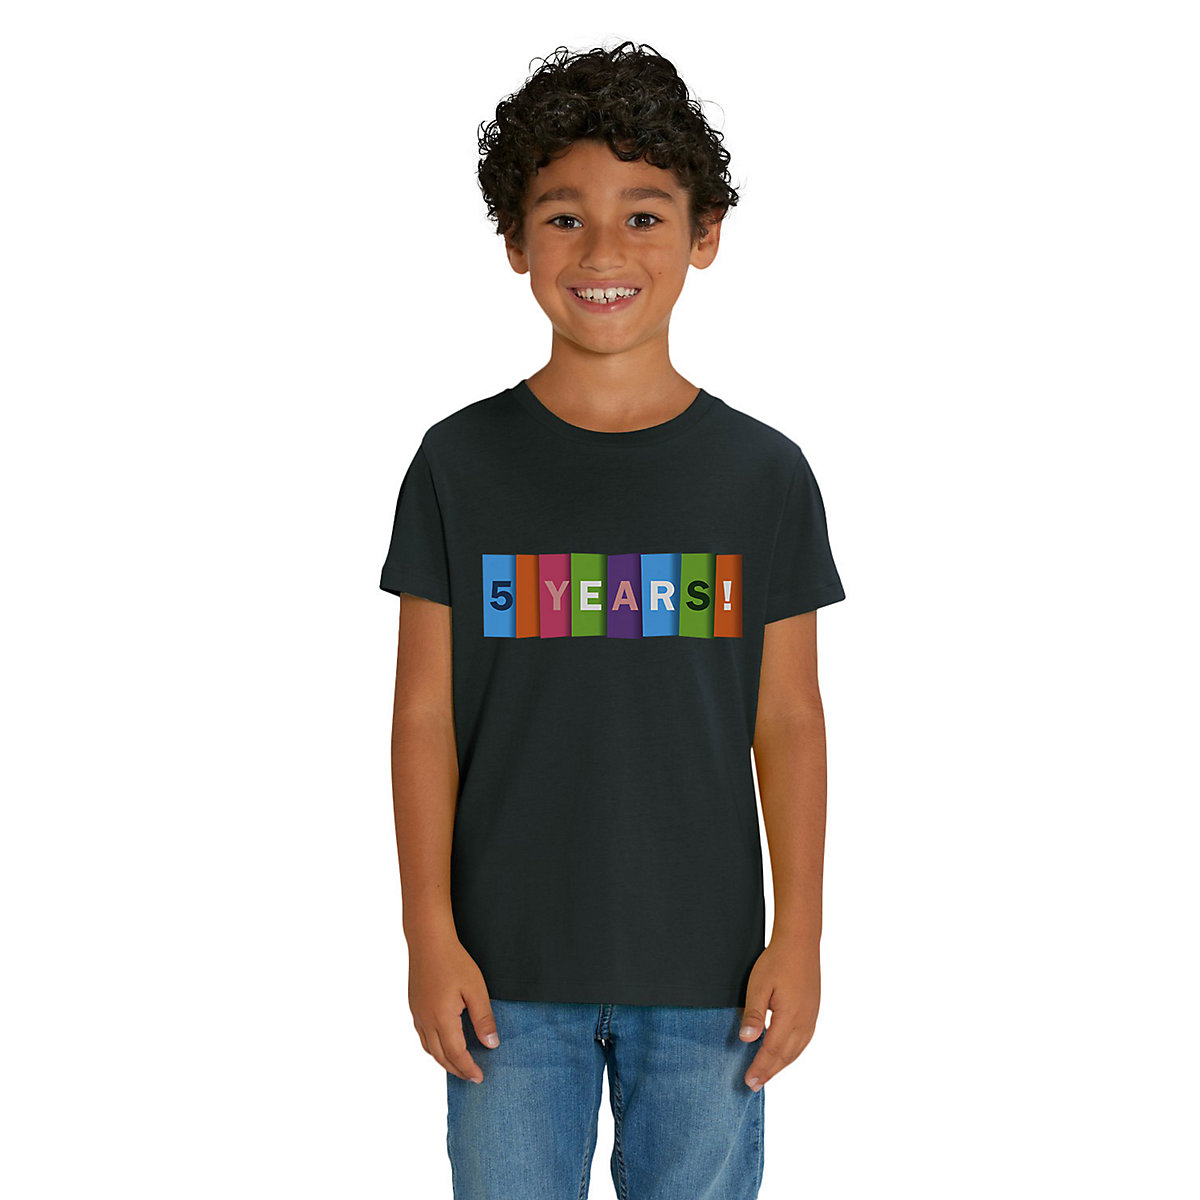 Hilltop Kinder T-Shirt zum 5. Geburtstag für Kinder schwarz